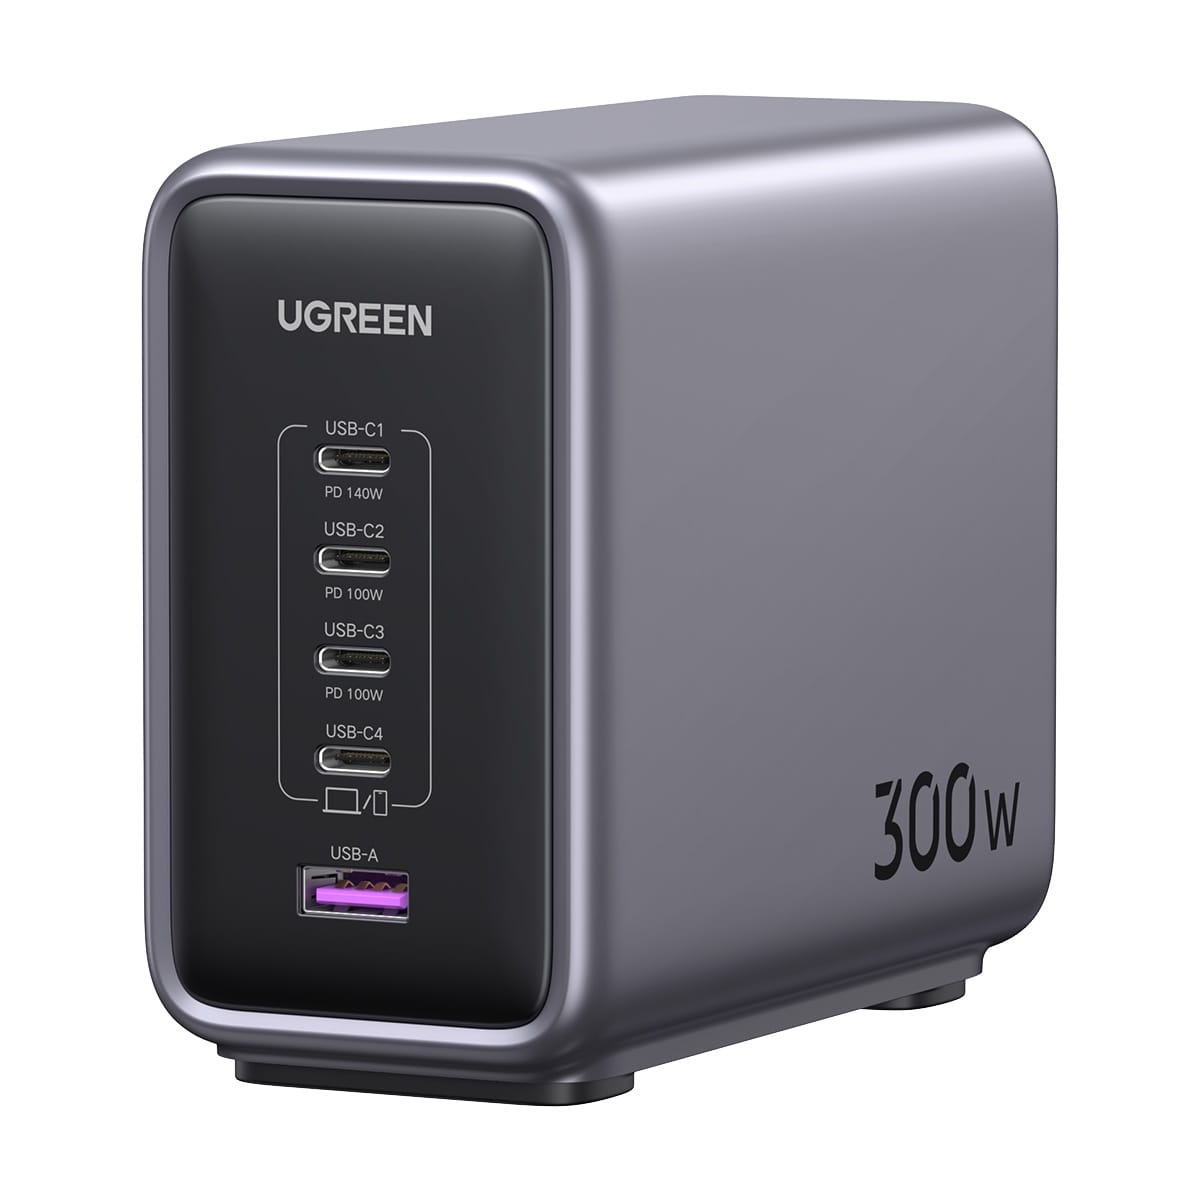 UGREENのUSB急速充電器、モバイルバッテリー、USB-Cハブなどが割引価格に